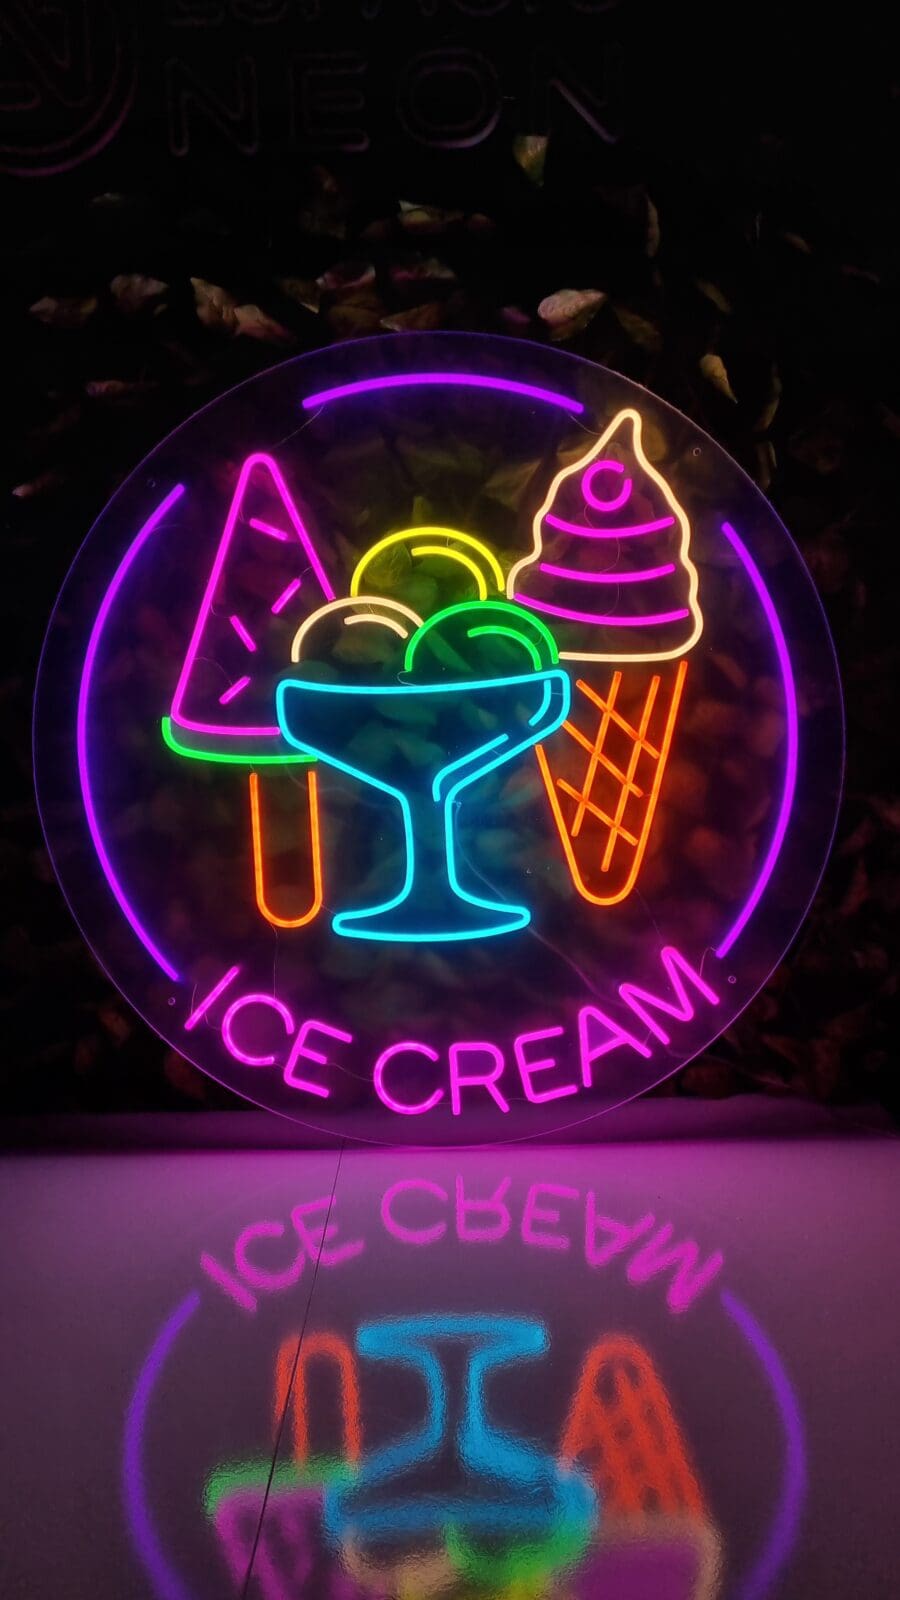 Letrero de Neón ICE Cream con imágenes vibrantes de varias delicias de Neón ICE Cream: un cono, un helado y una paleta. En la parte inferior se muestra claramente el texto "Helado".